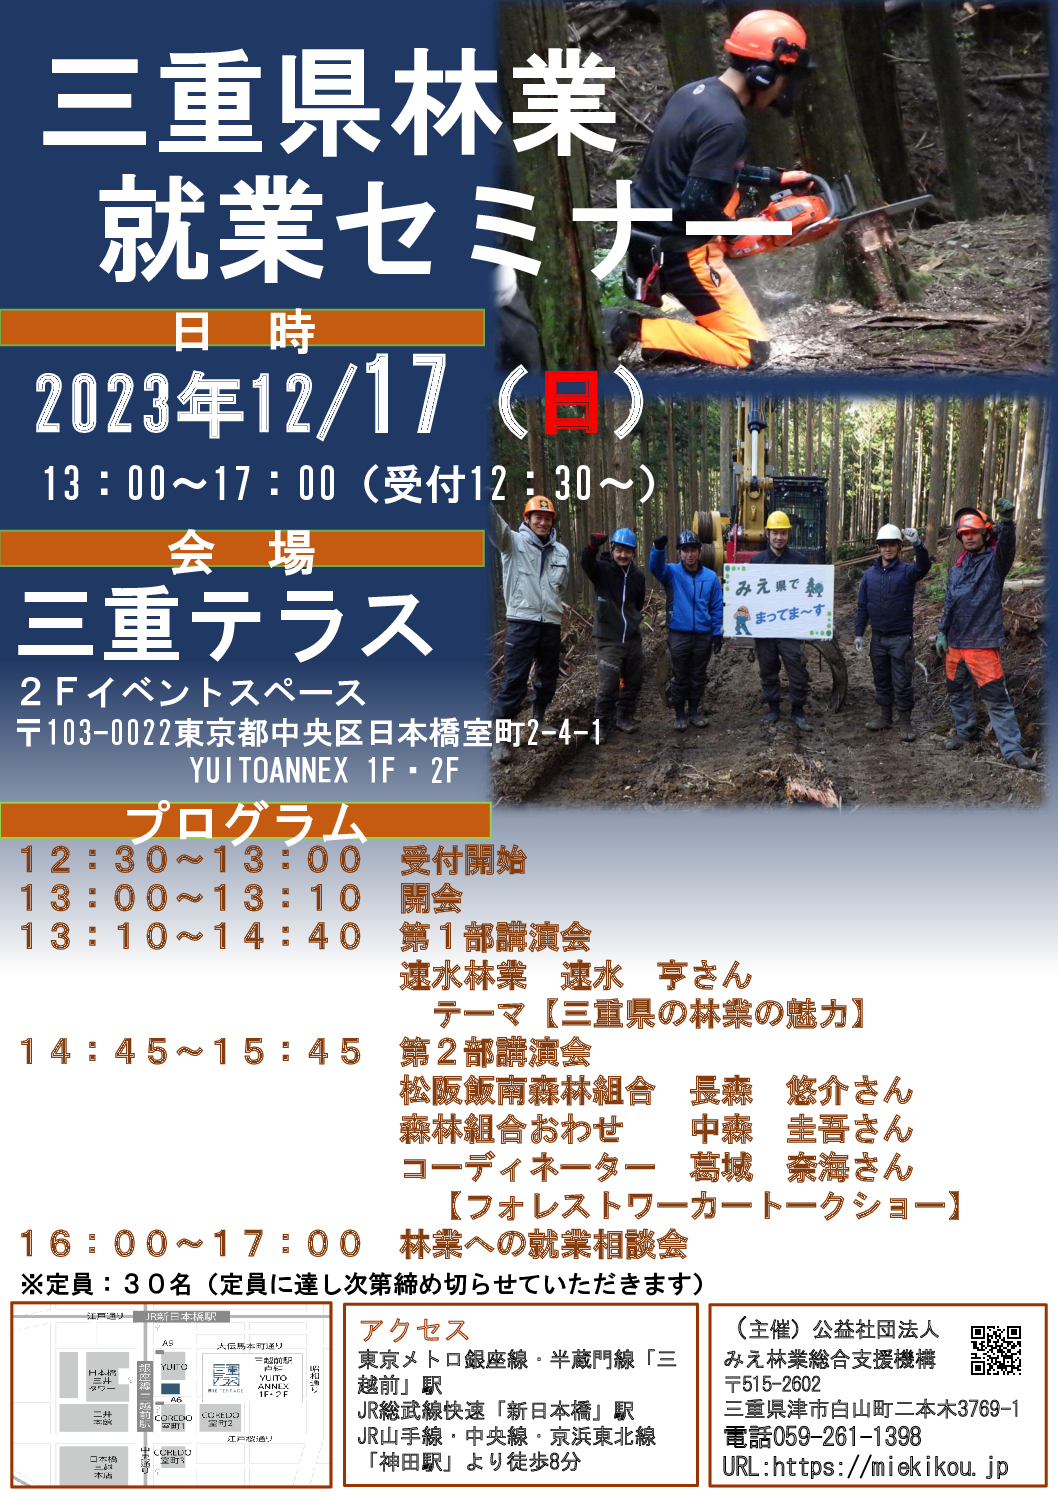 三重県林業就業セミナー